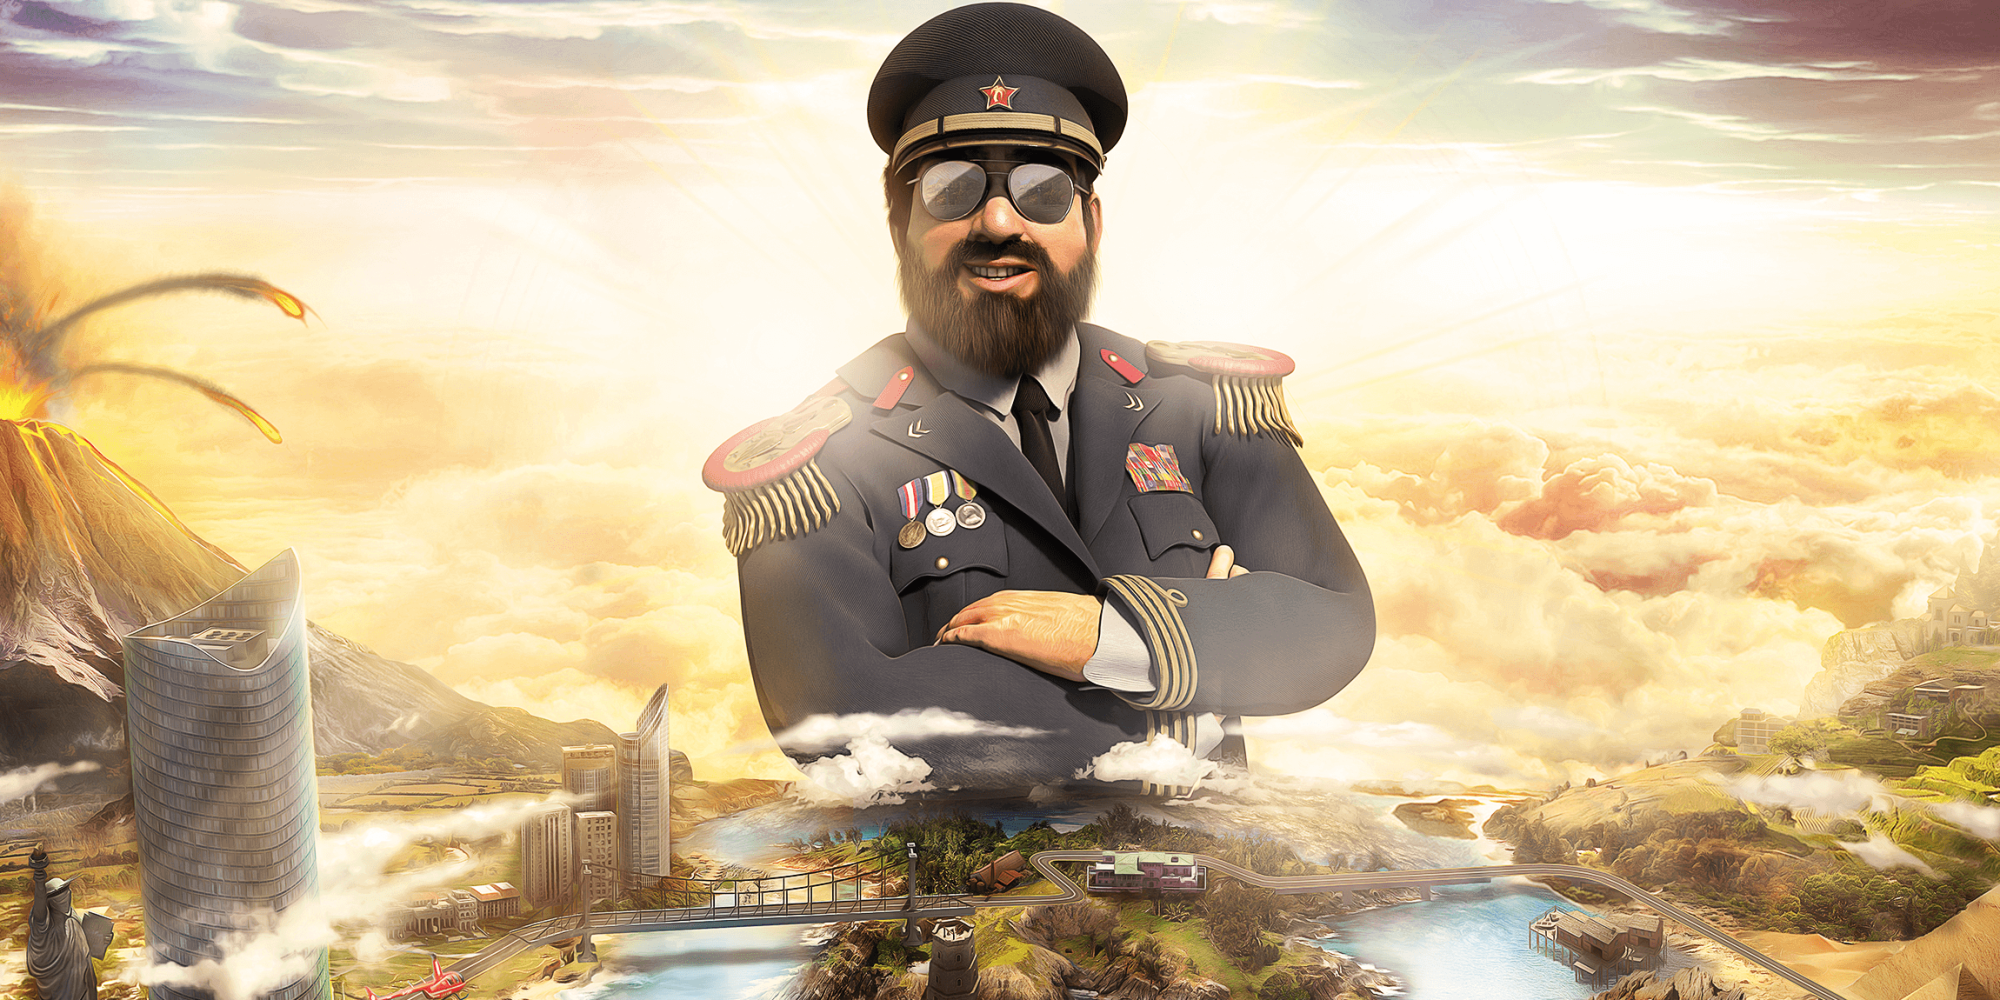 Tropico 6 Protagonist El Presidente Shown In Front Of Tropico Island